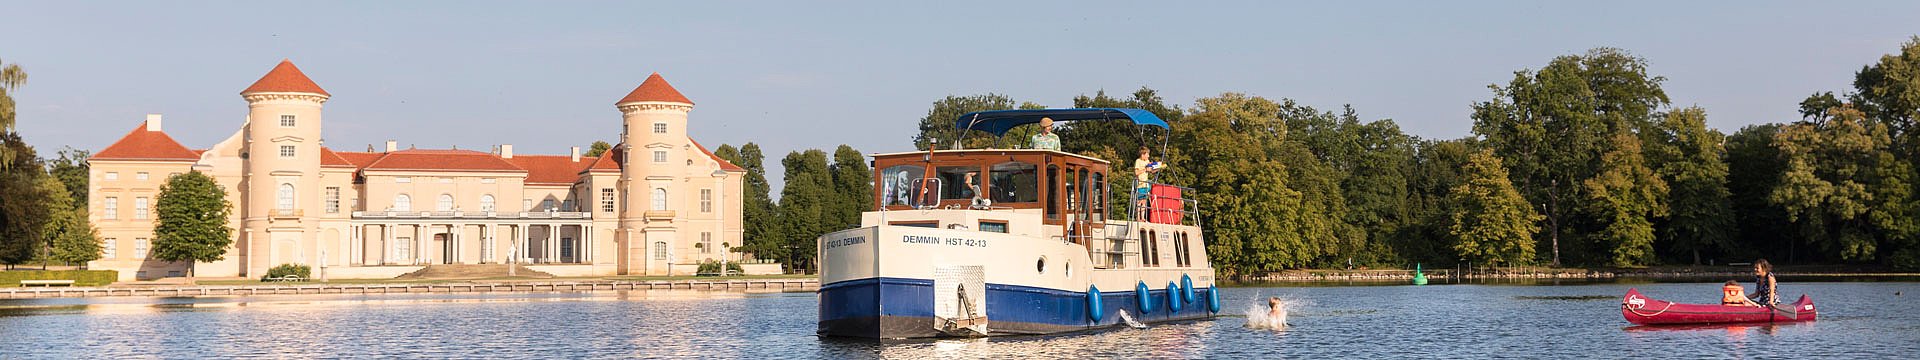 Hausboot mieten mit Kuhnle-Tours